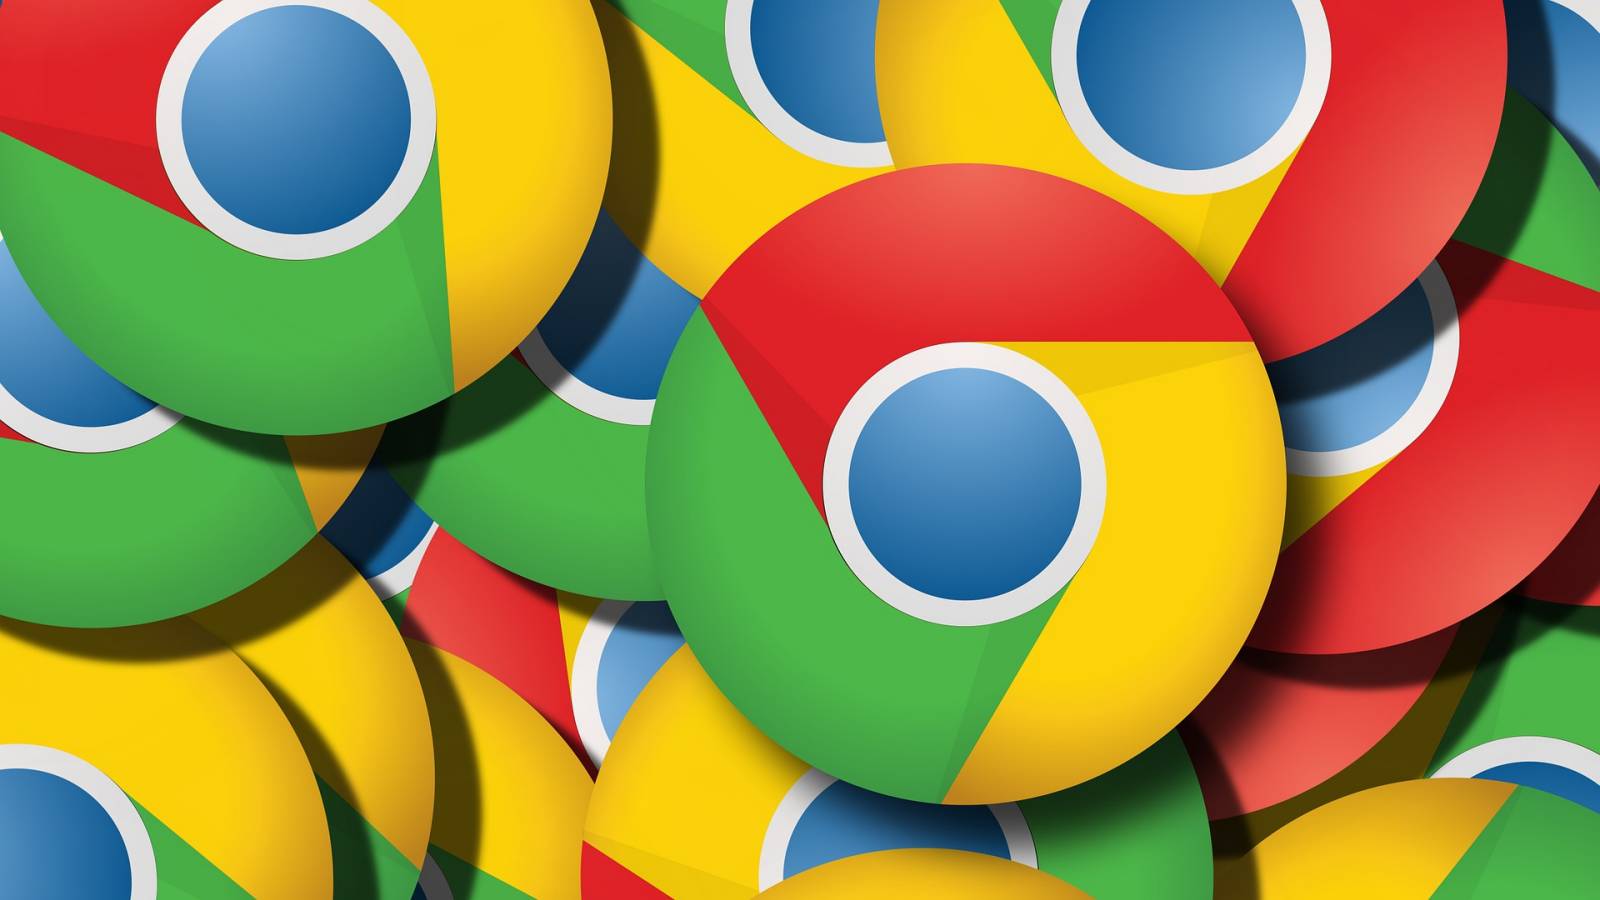 Google Chrome Update brengt nieuwe wijzigingen aan telefoons en tablets